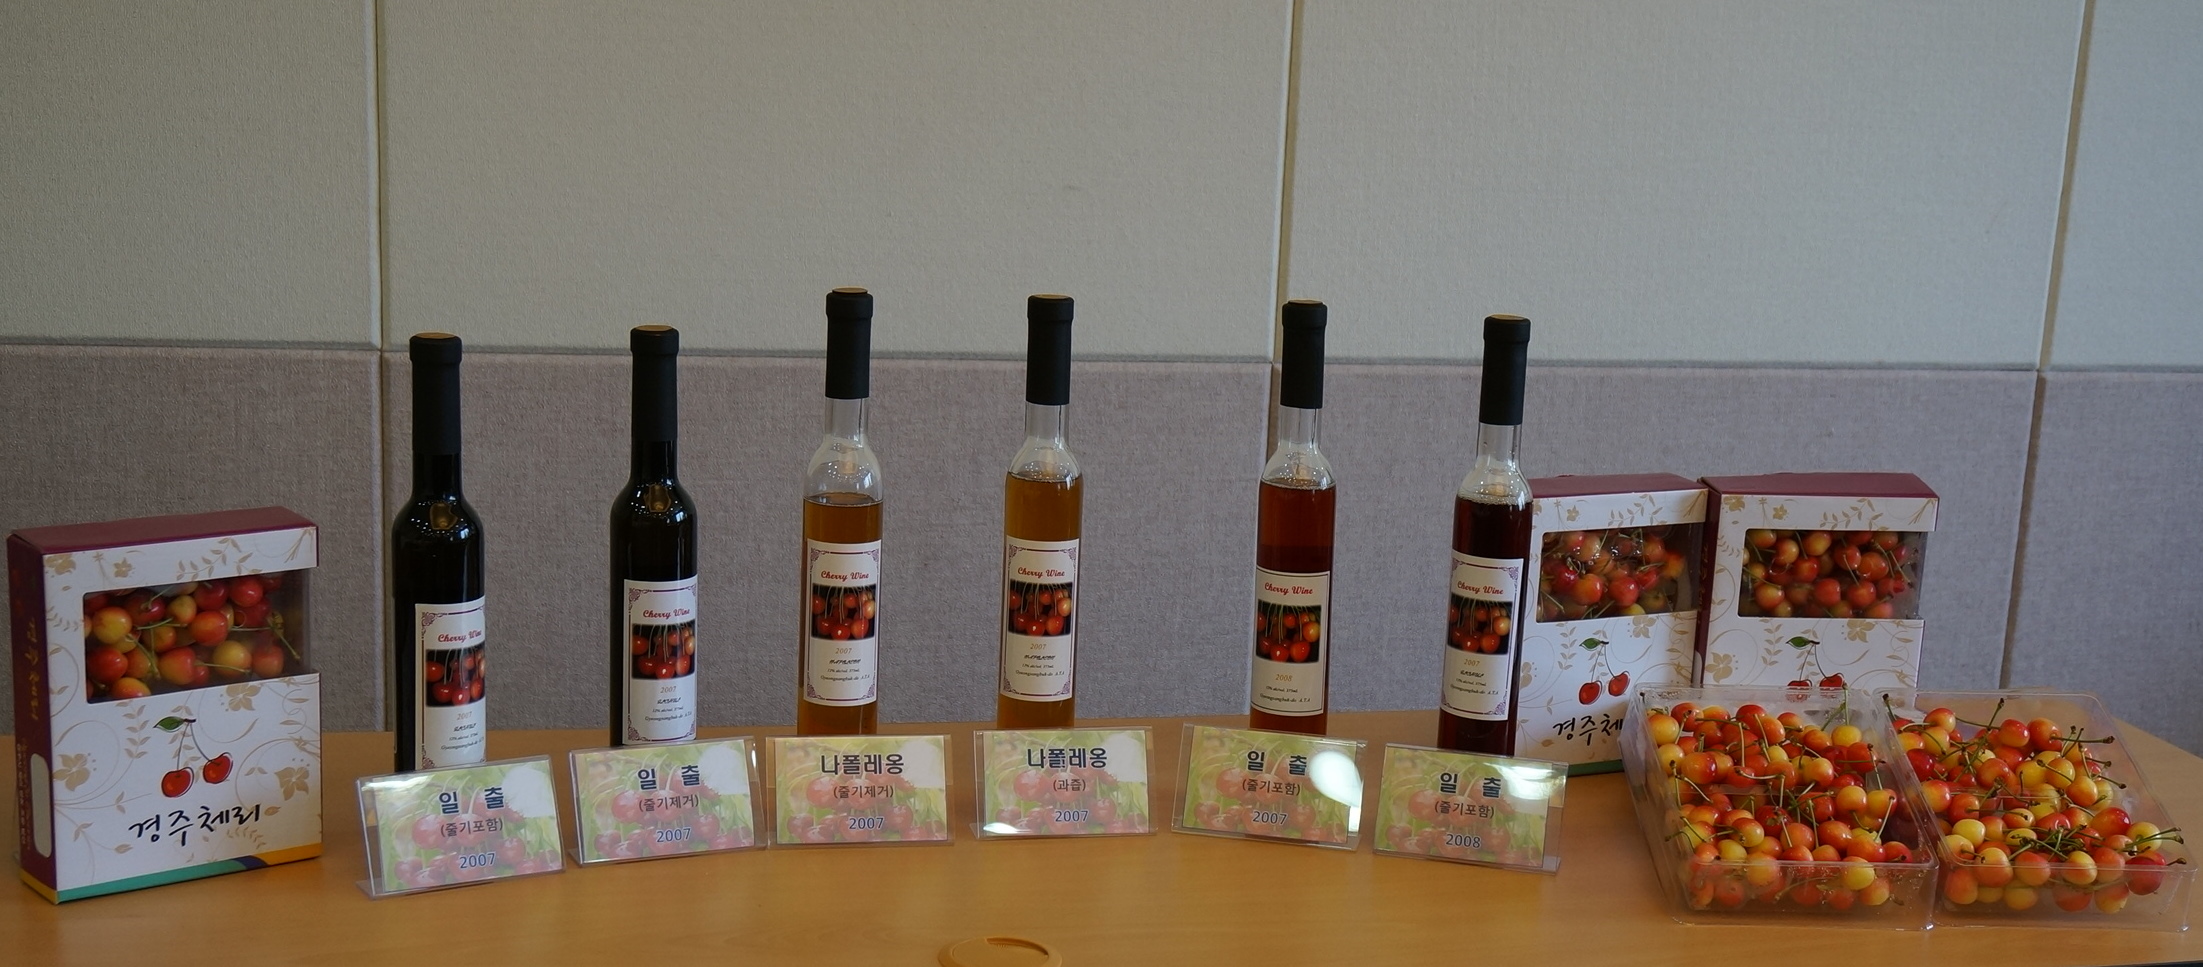 양앵두(체리) 와인 제조 특허기술 이전